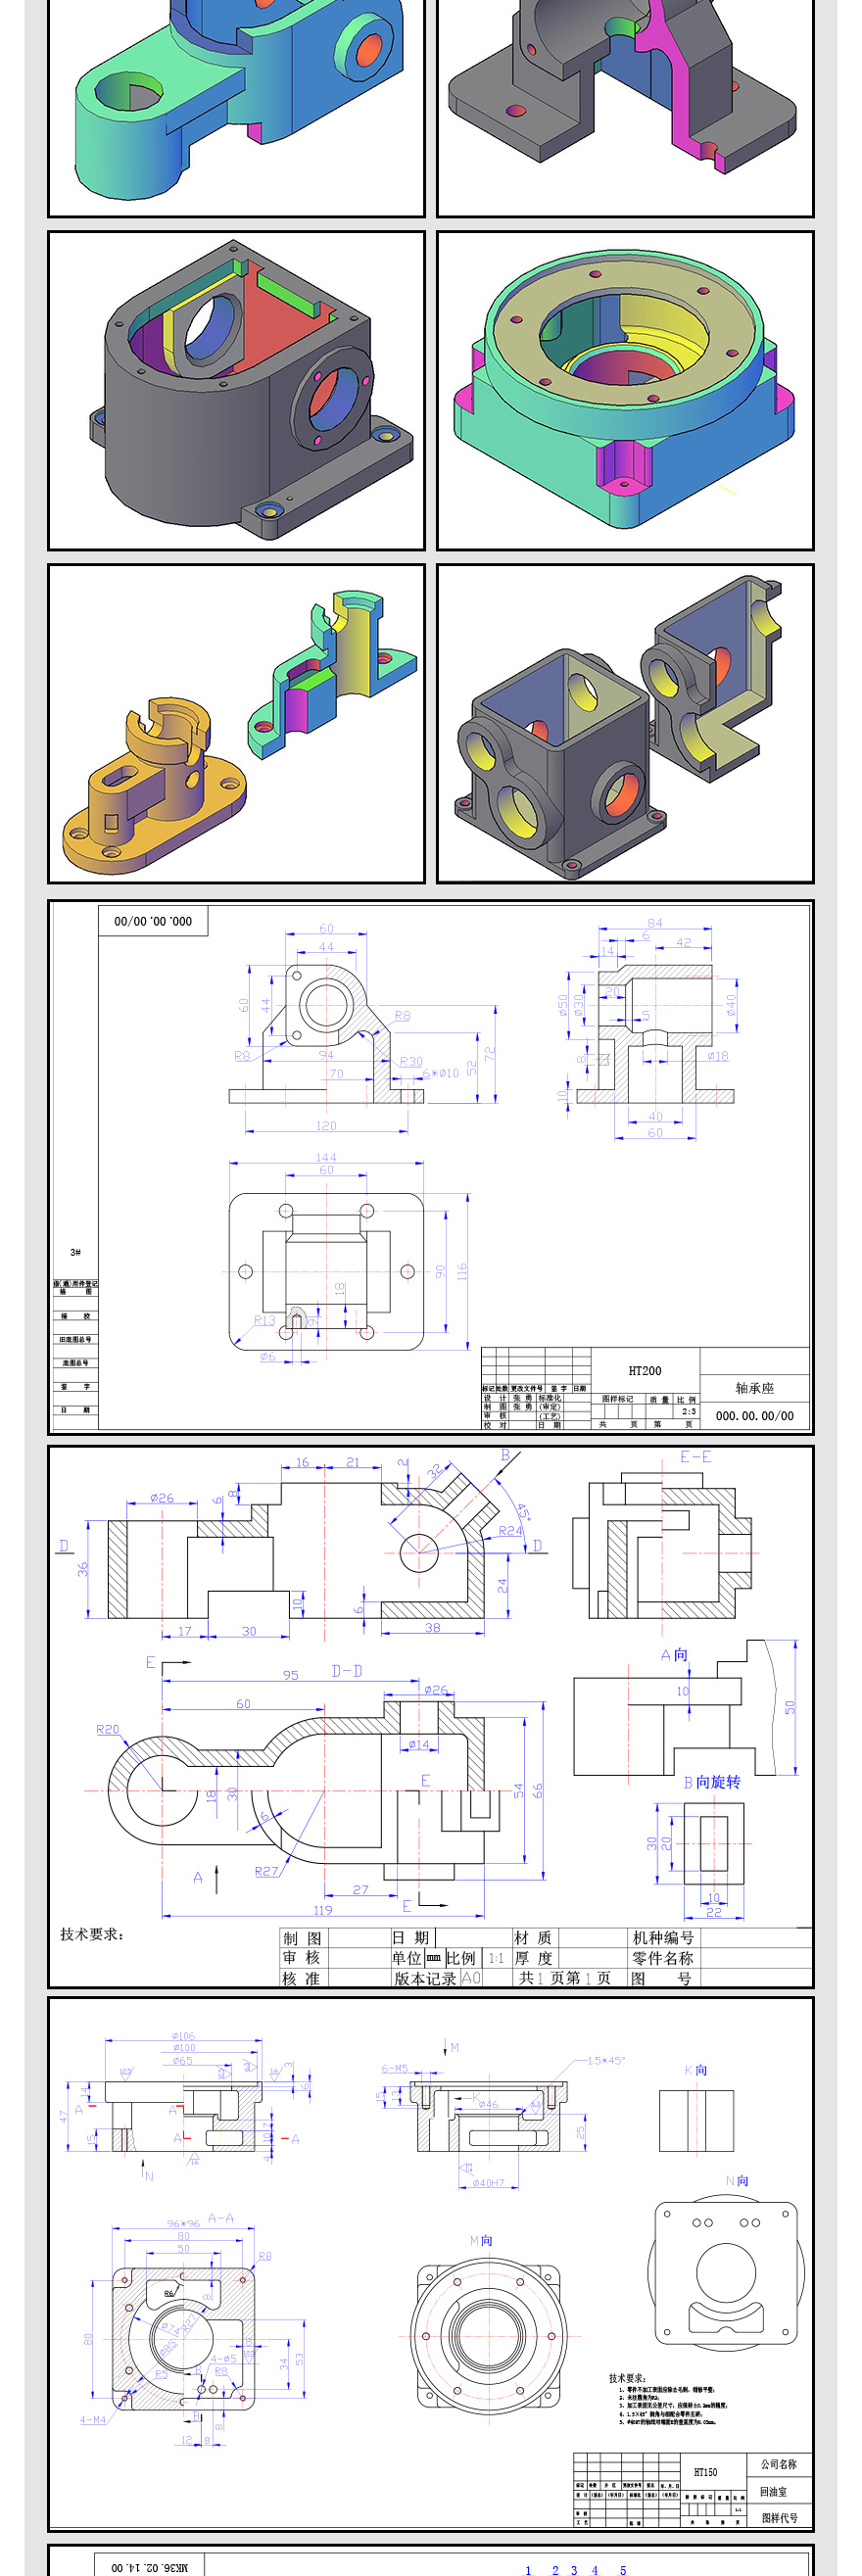 CAD机械制图高级课程-切片2_04.jpg